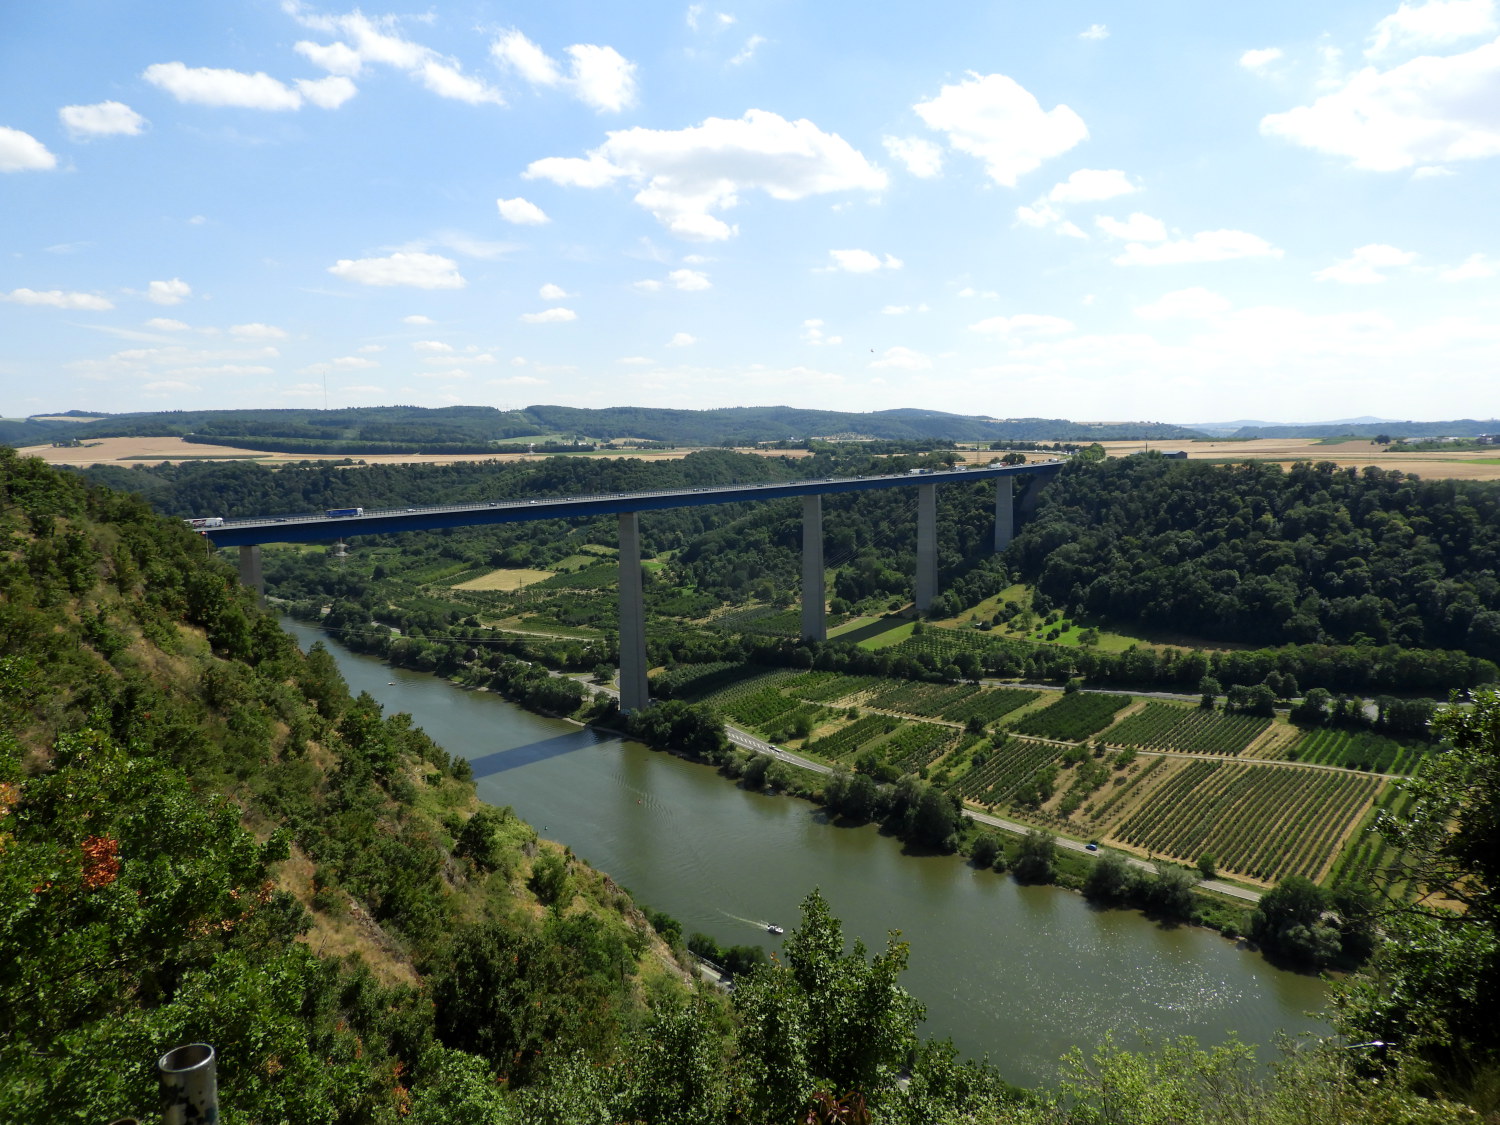 The Moseltalbrücke